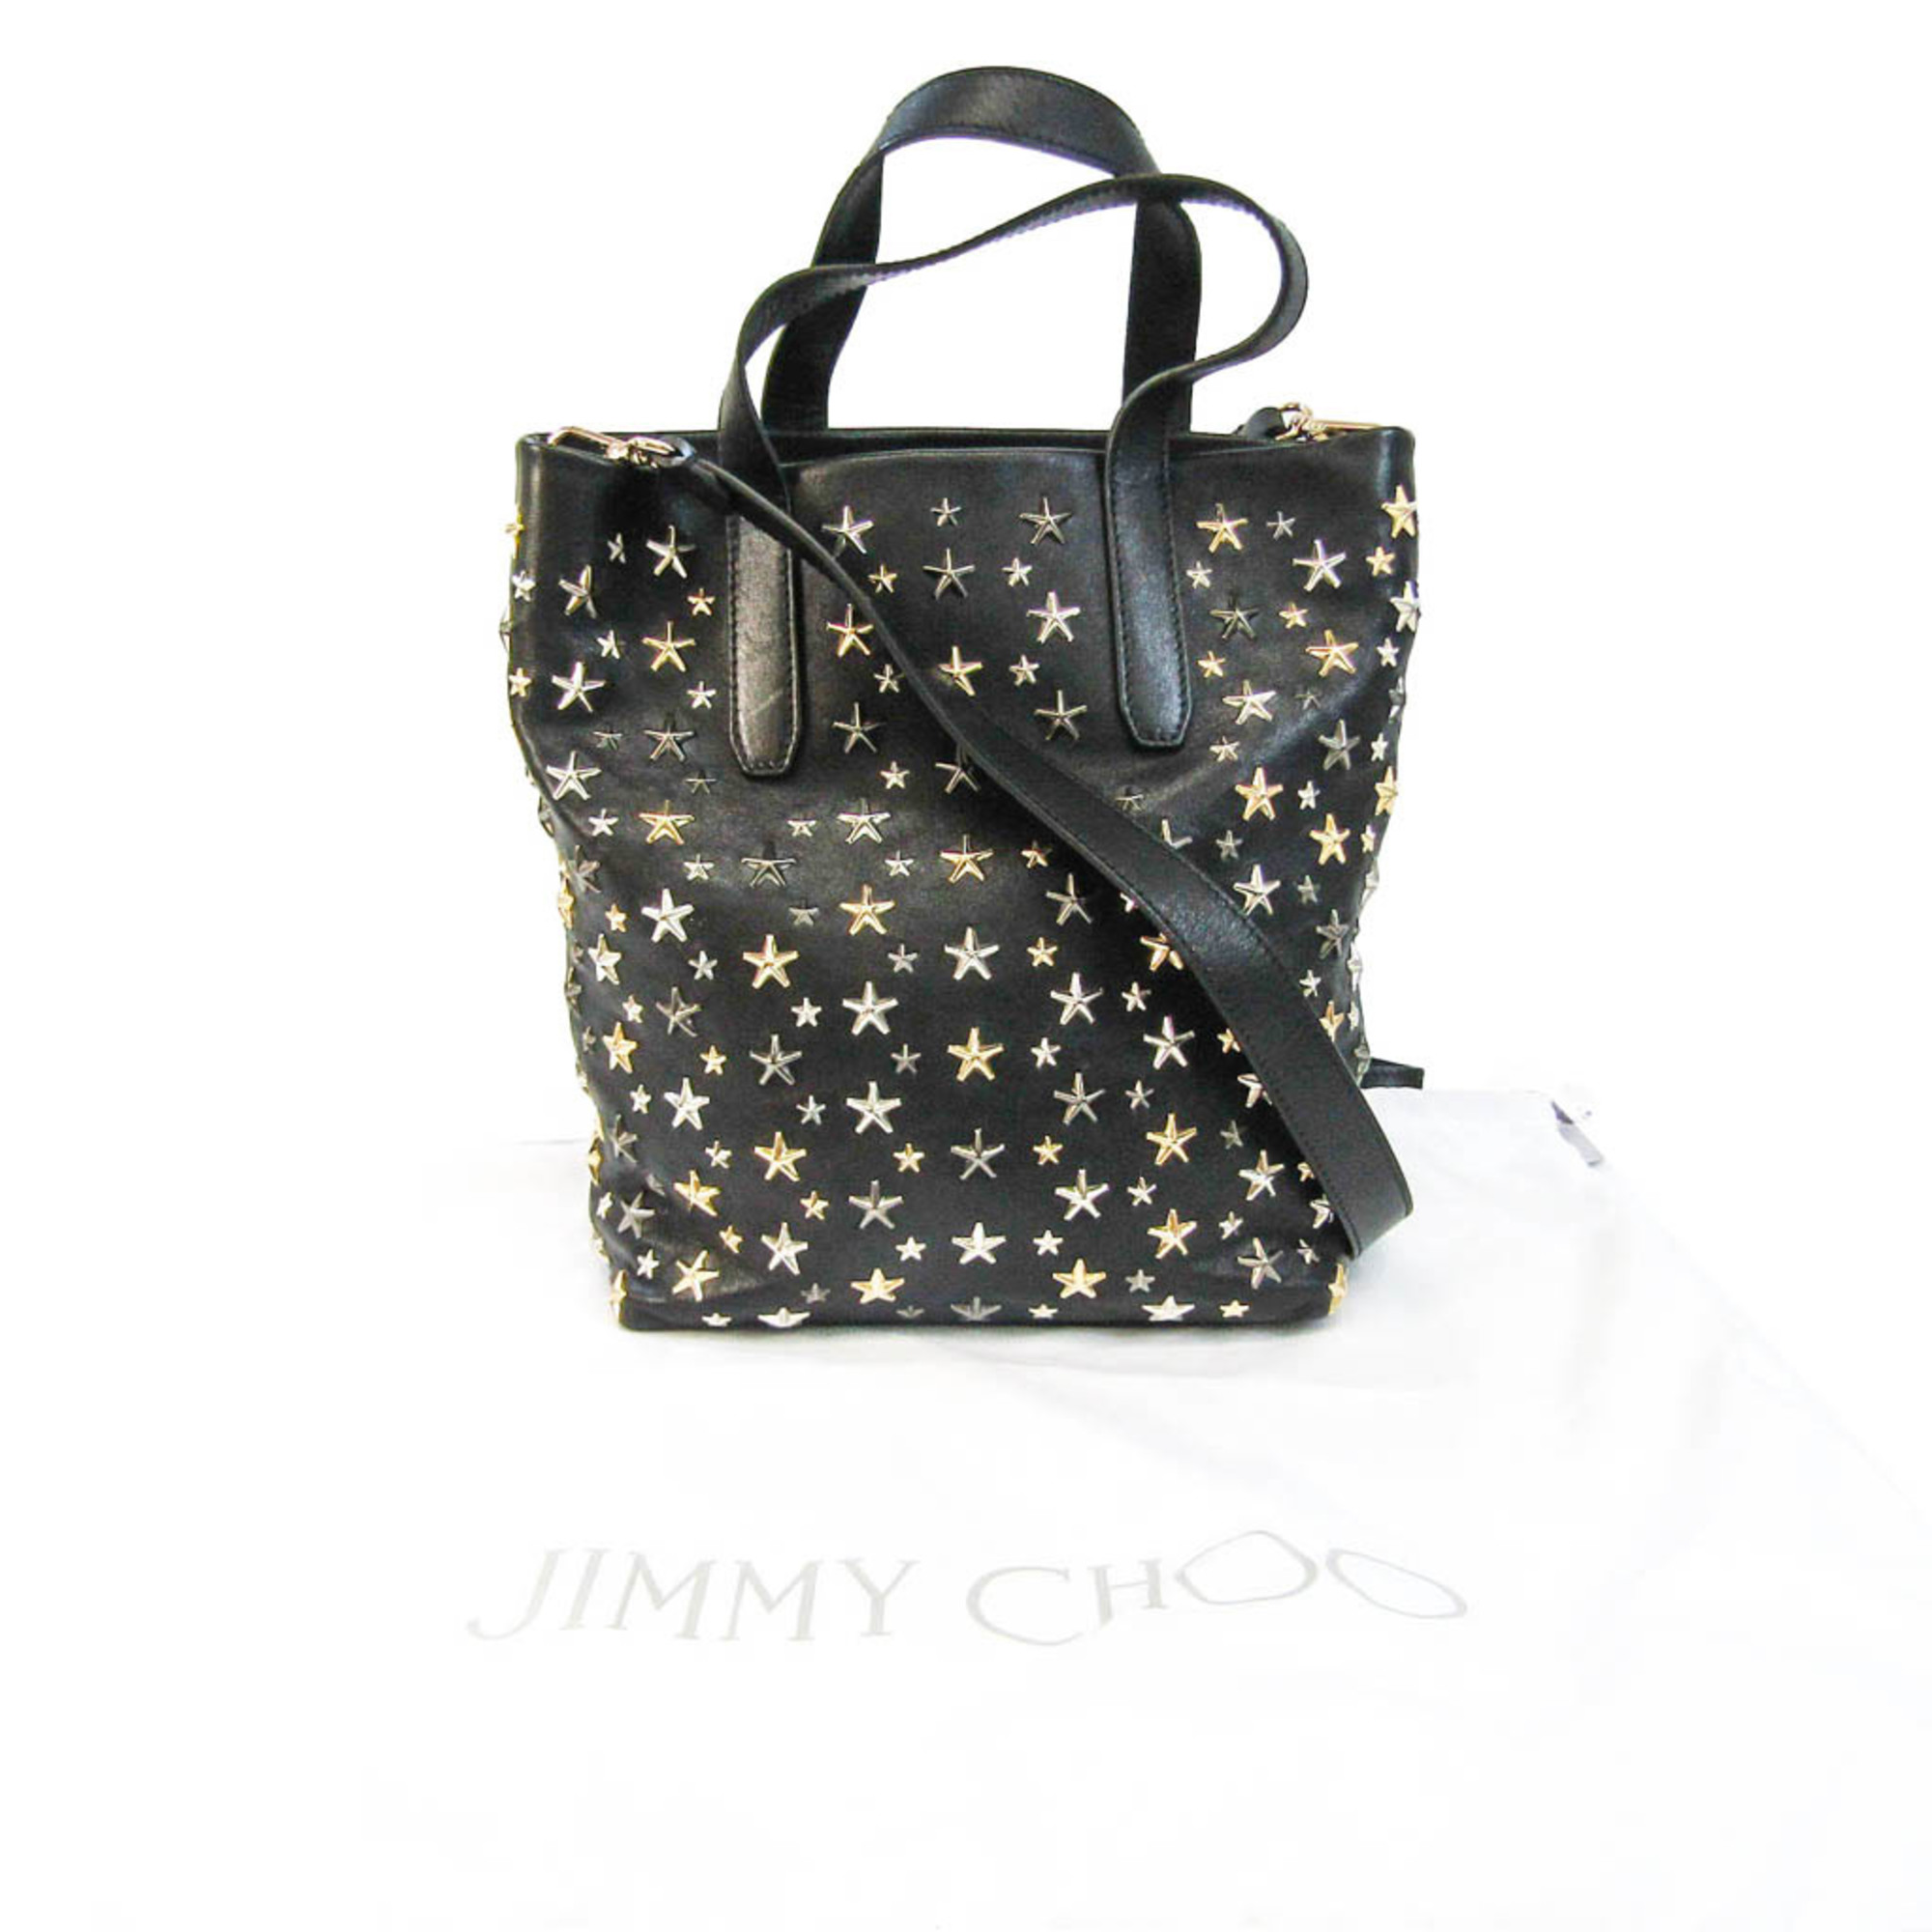 Jimmy Choo Women's Leather Studded Shoulder Bag,Tote Bag Black